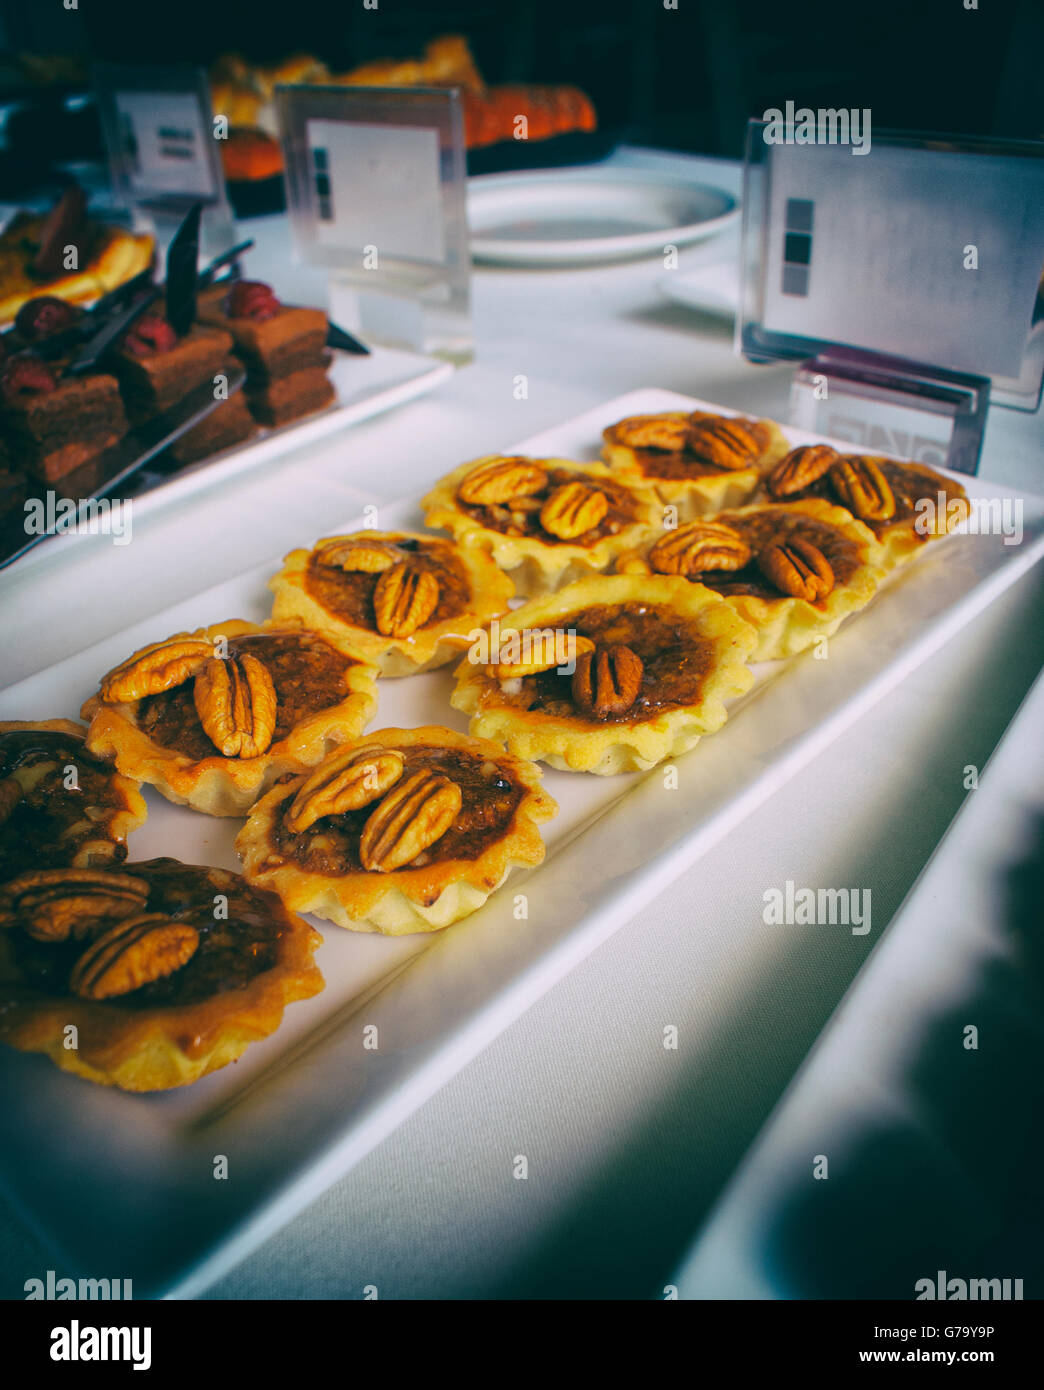 Photographie d'un écrou pie dessert sur une table avec d'autres pies Banque D'Images